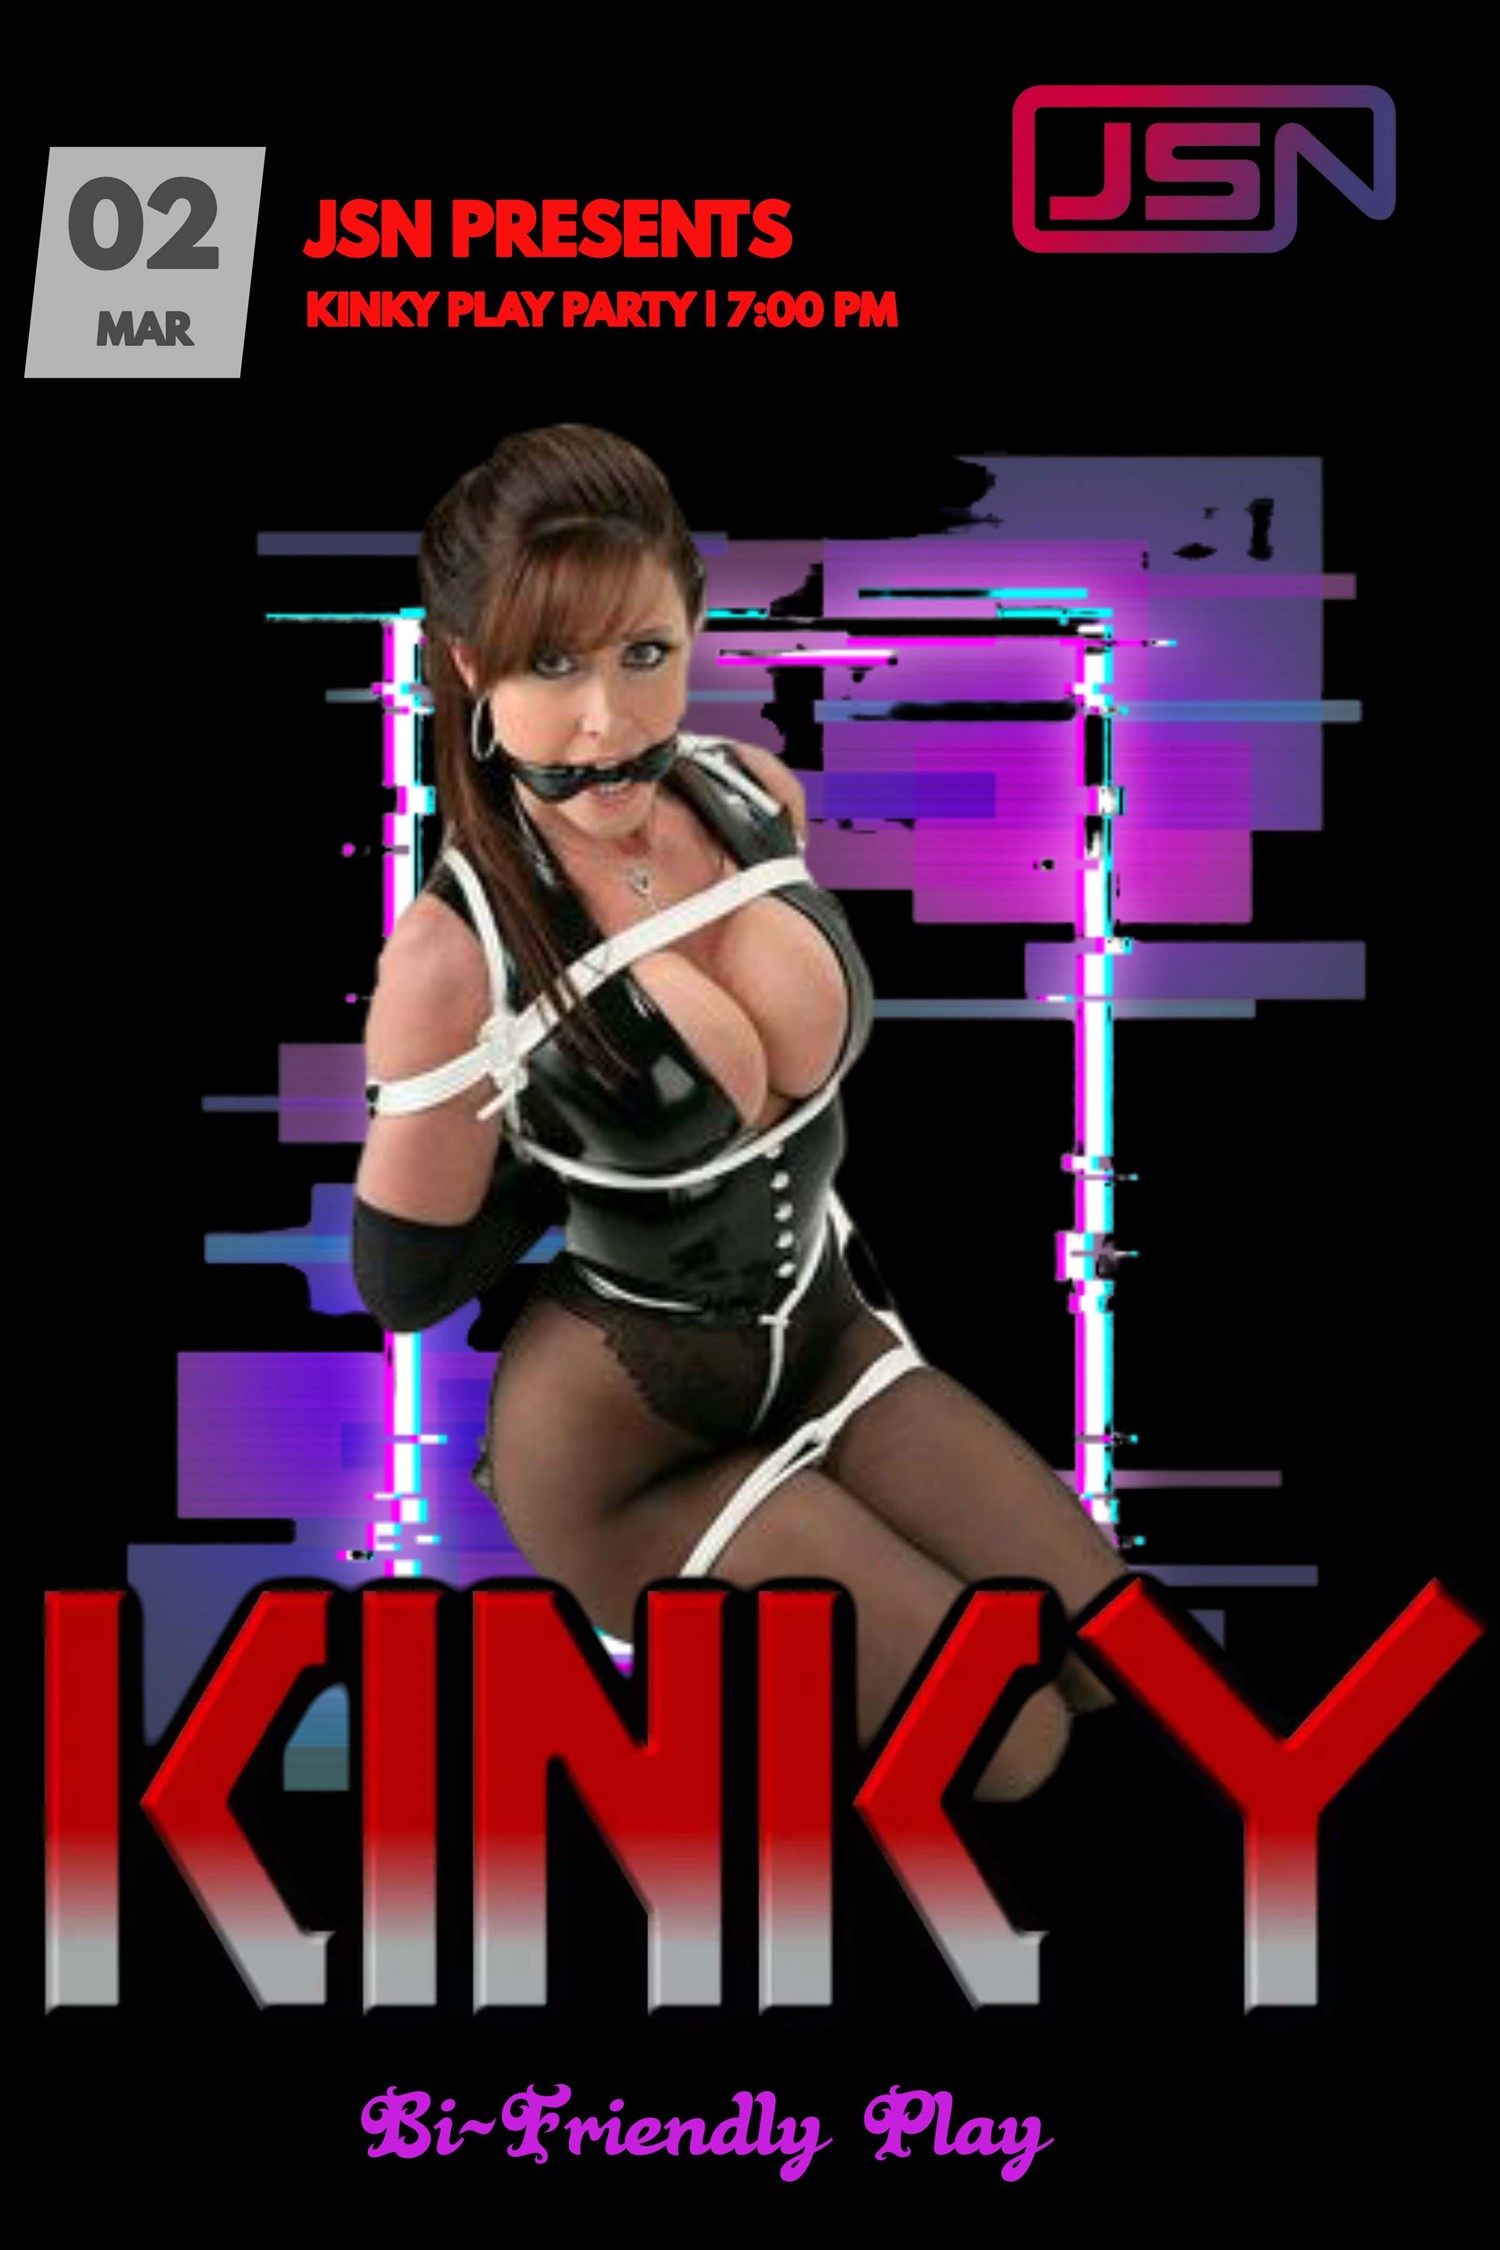 Kinky Play Party Full Swap Play Event on mars 02, 19:00@Embassy Suites by Hilton - Achetez des billets et obtenez des informations surJen's Social Networking 